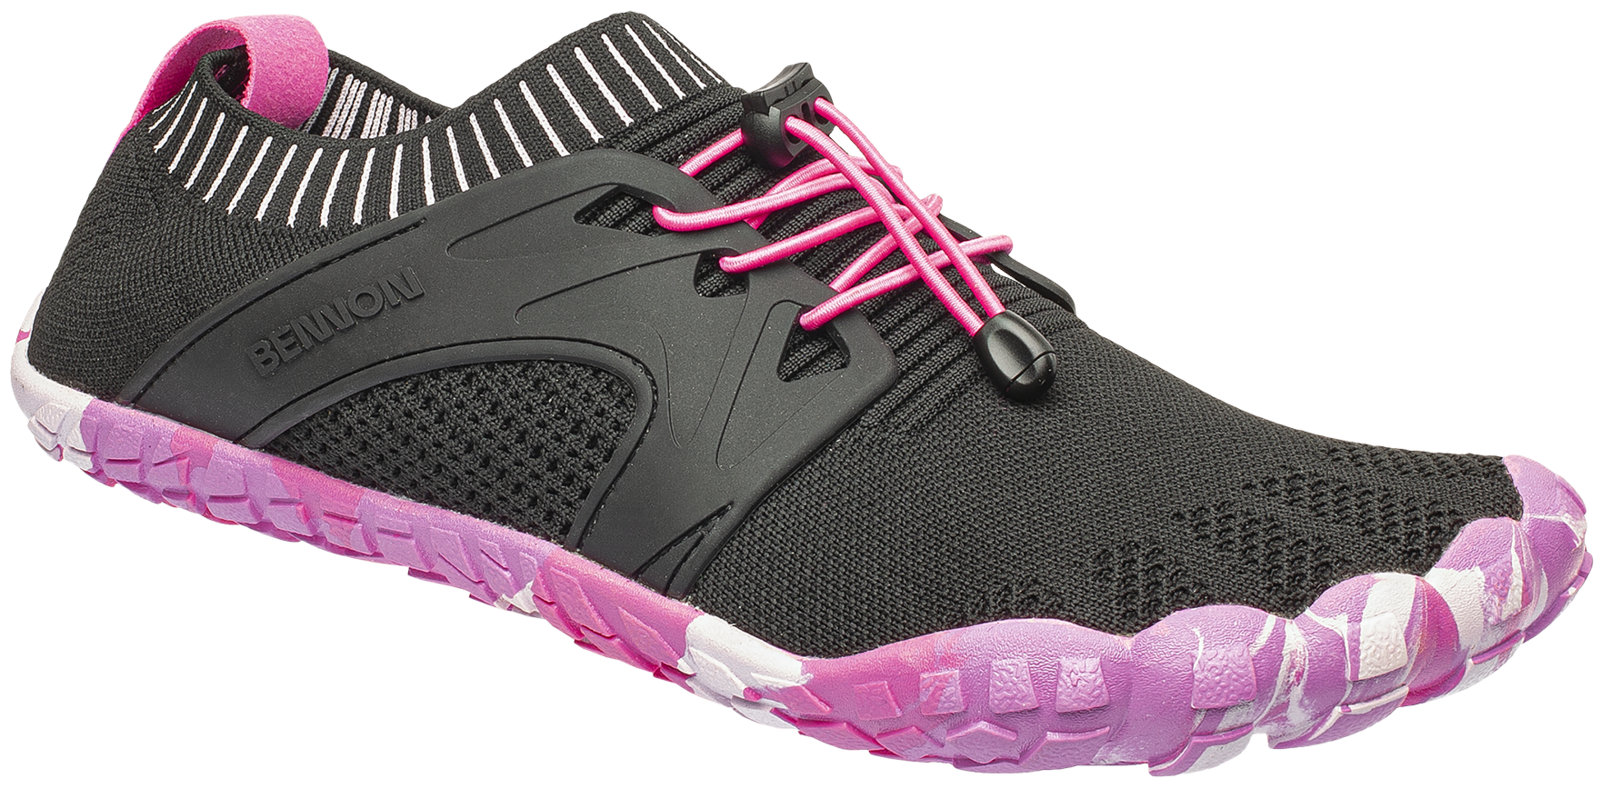 Voľnočasová barefoot obuv Bennon Bosky - veľkosť: 40, farba: čierna/ružová